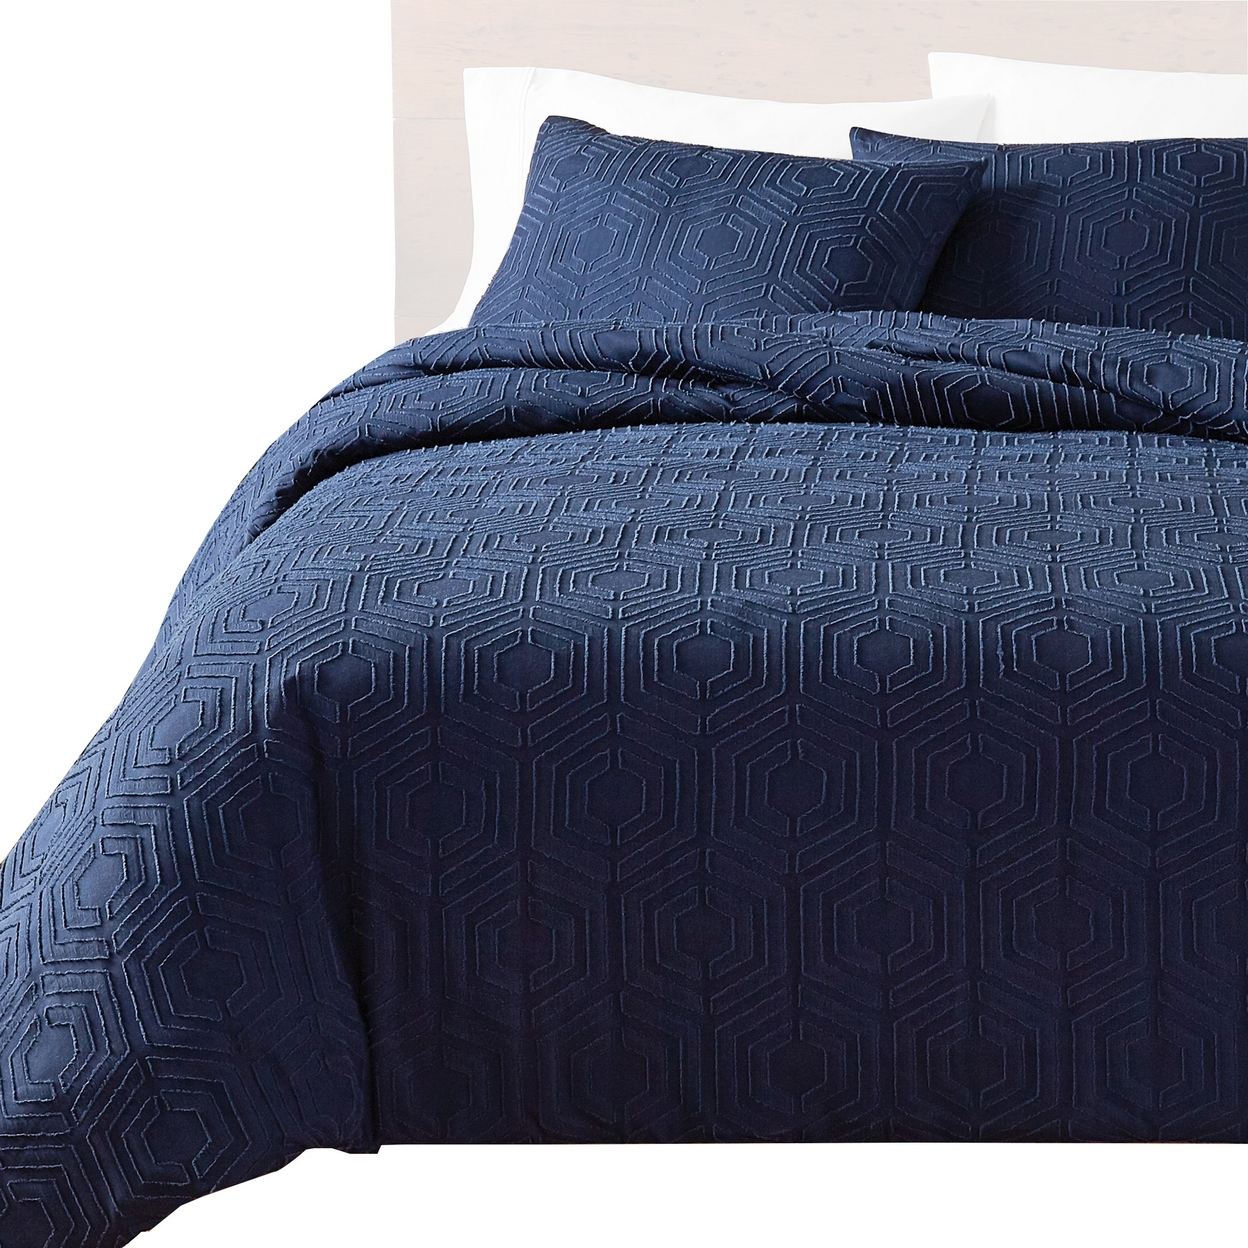 Jose 3 Piece King Size Comforter Set, Matching Shams, Jacquard Navy Blue - Saltoro Sherpi